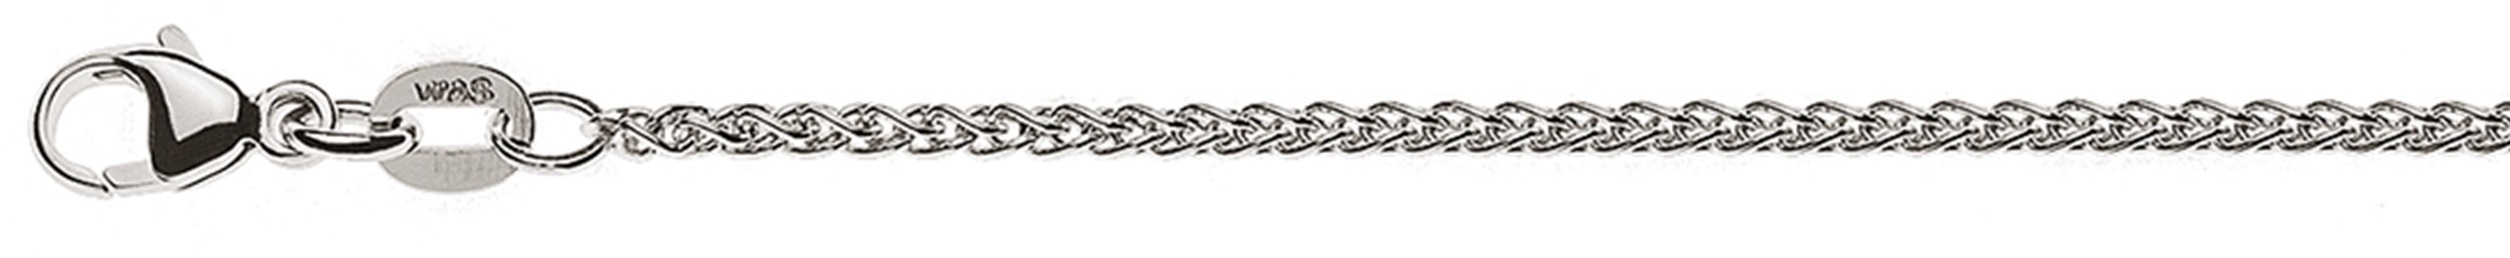 AURONOS Élégance Necklace white gold 14K cable chain 42cm 1.65mm